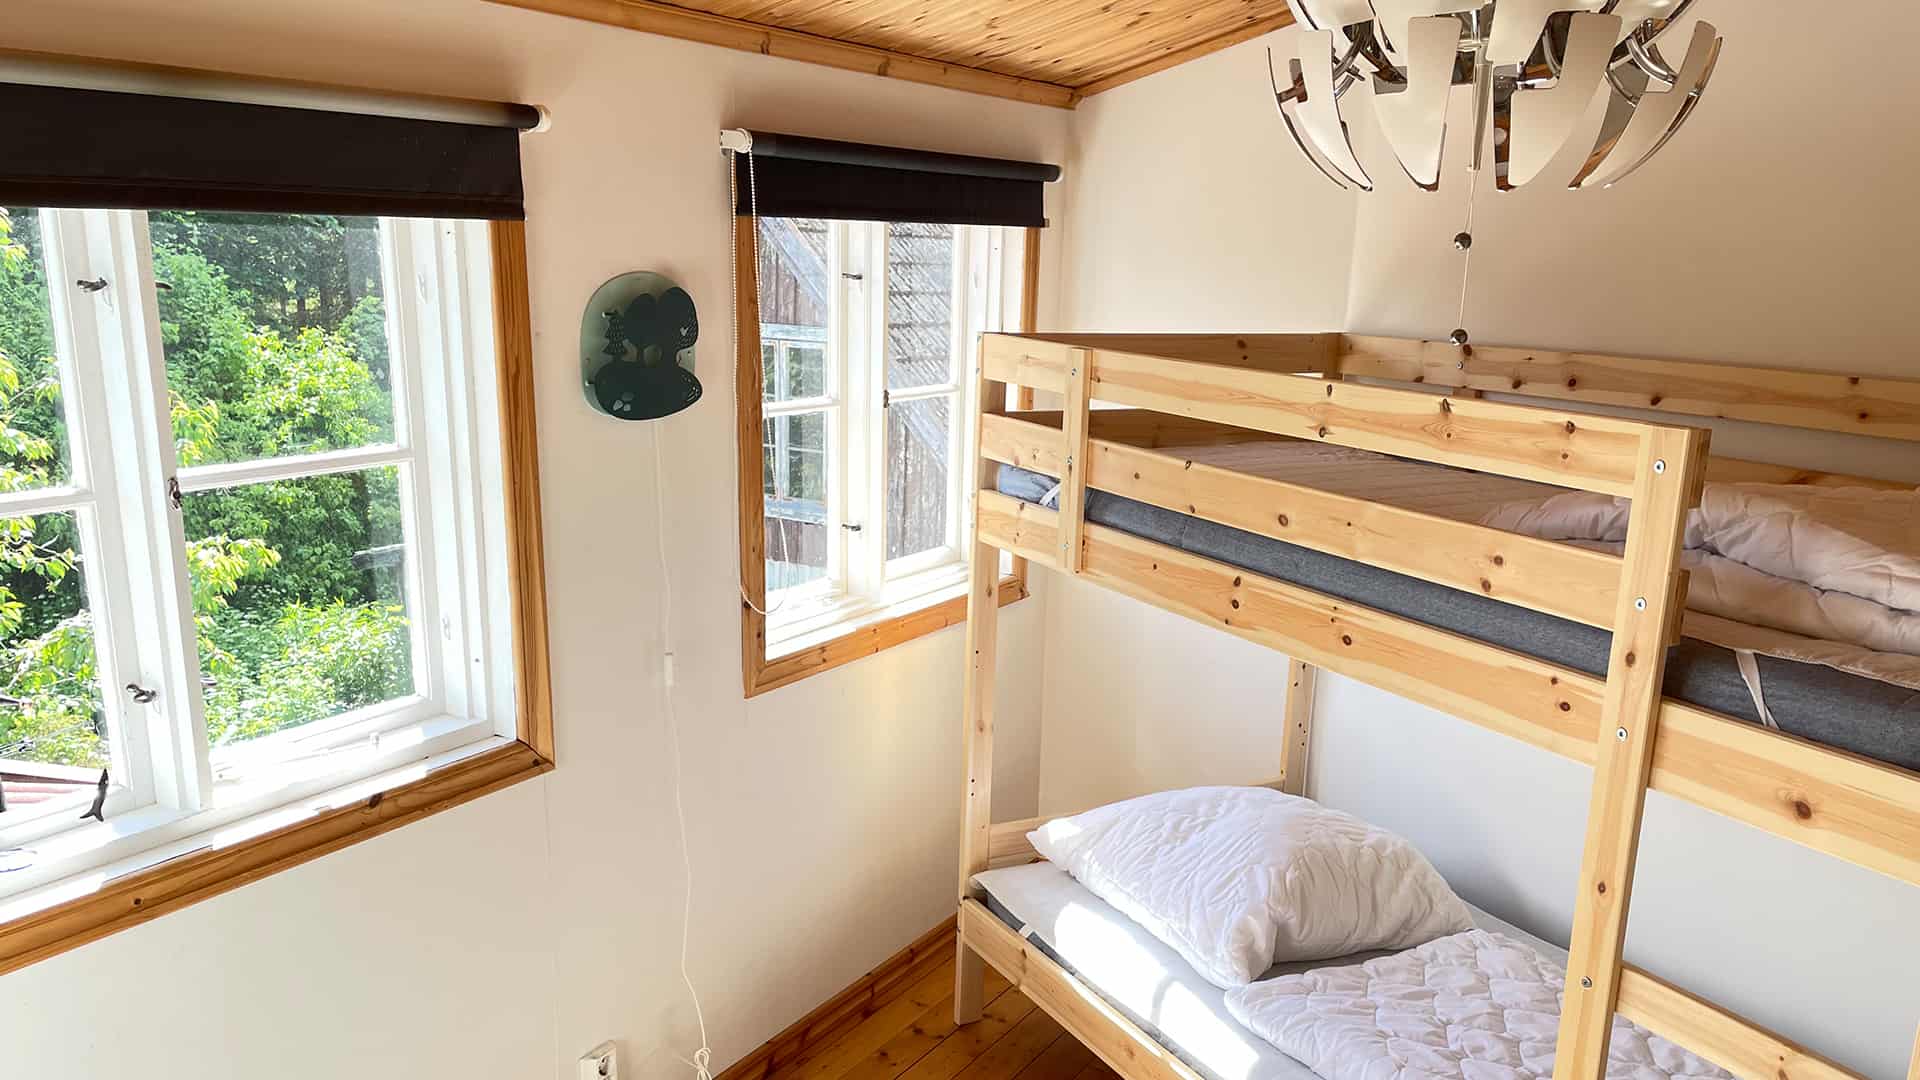 Kinderschlafzimmer mit Etagenbett aus Naturholz